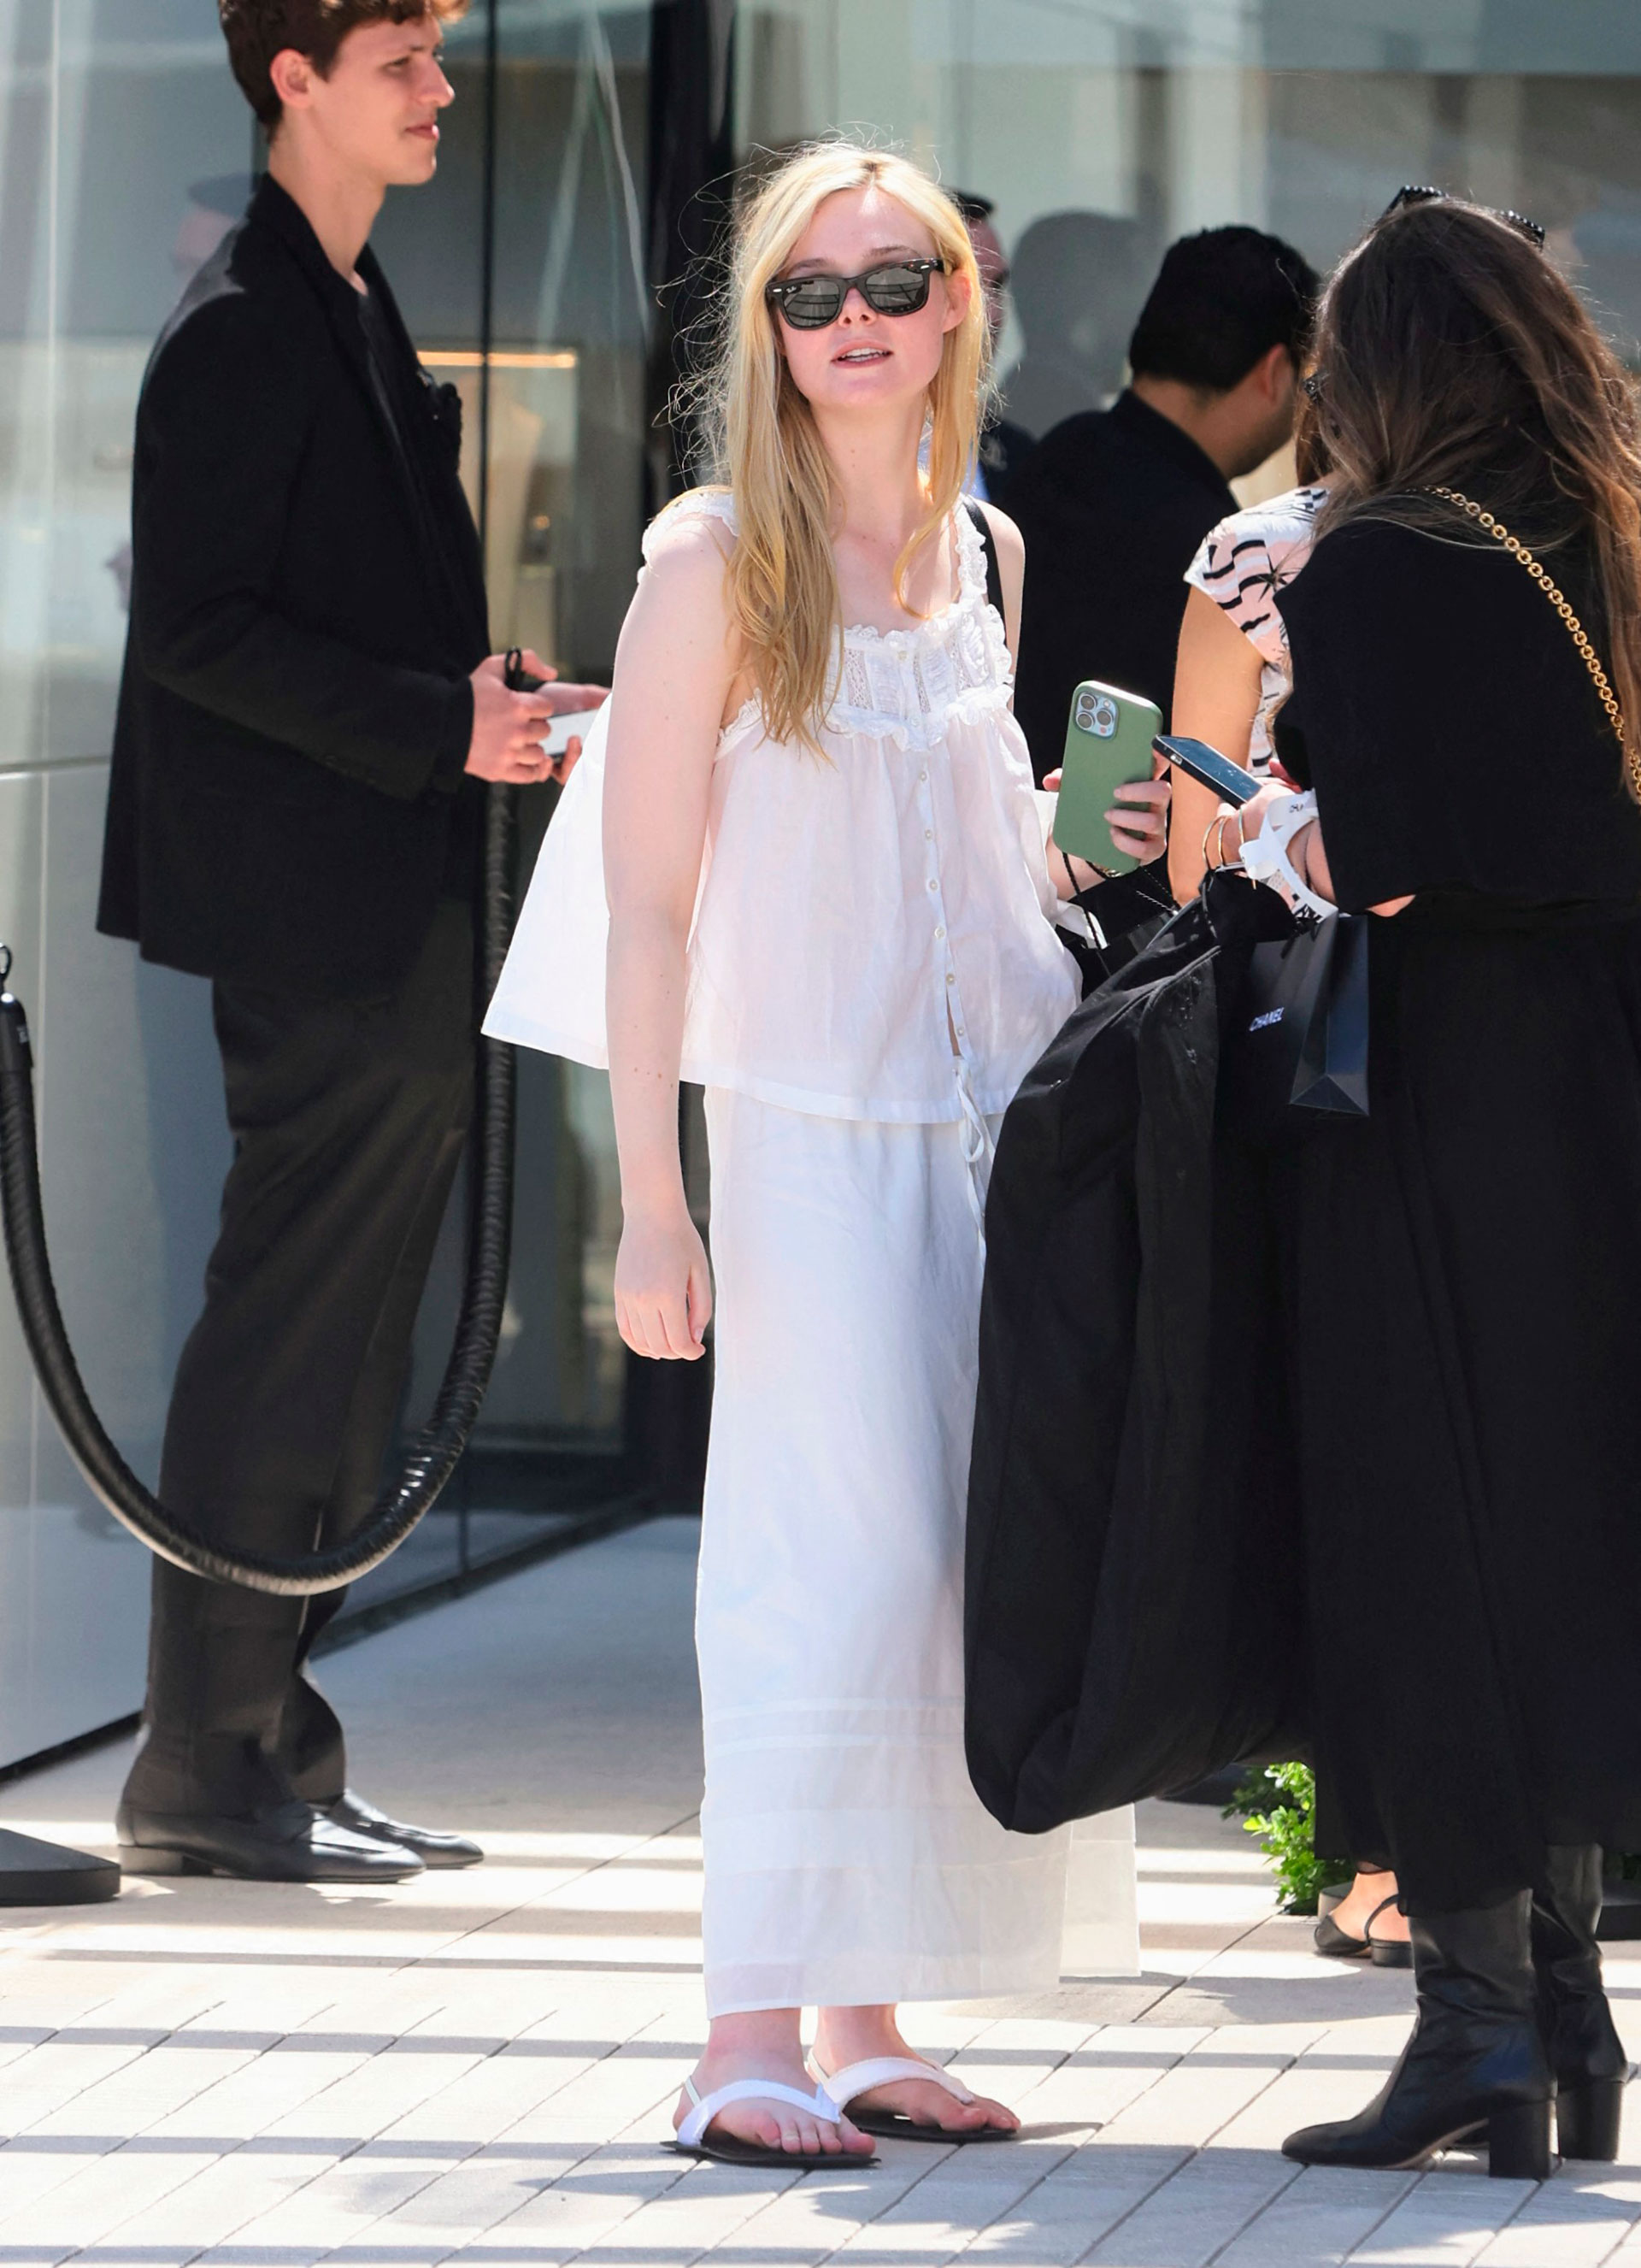 Día de compras. Elle Fanning fue fotografiada en el centro comercial de Rodeo Drive, Beverly Hills, Los Ángeles. Allí, recorrió las tiendas más exclusivas y se detuvo particularmente en Dior. Lució un conjunto de musculosa y pollera de lino color blanco que combinó con sus ojotas de cuero